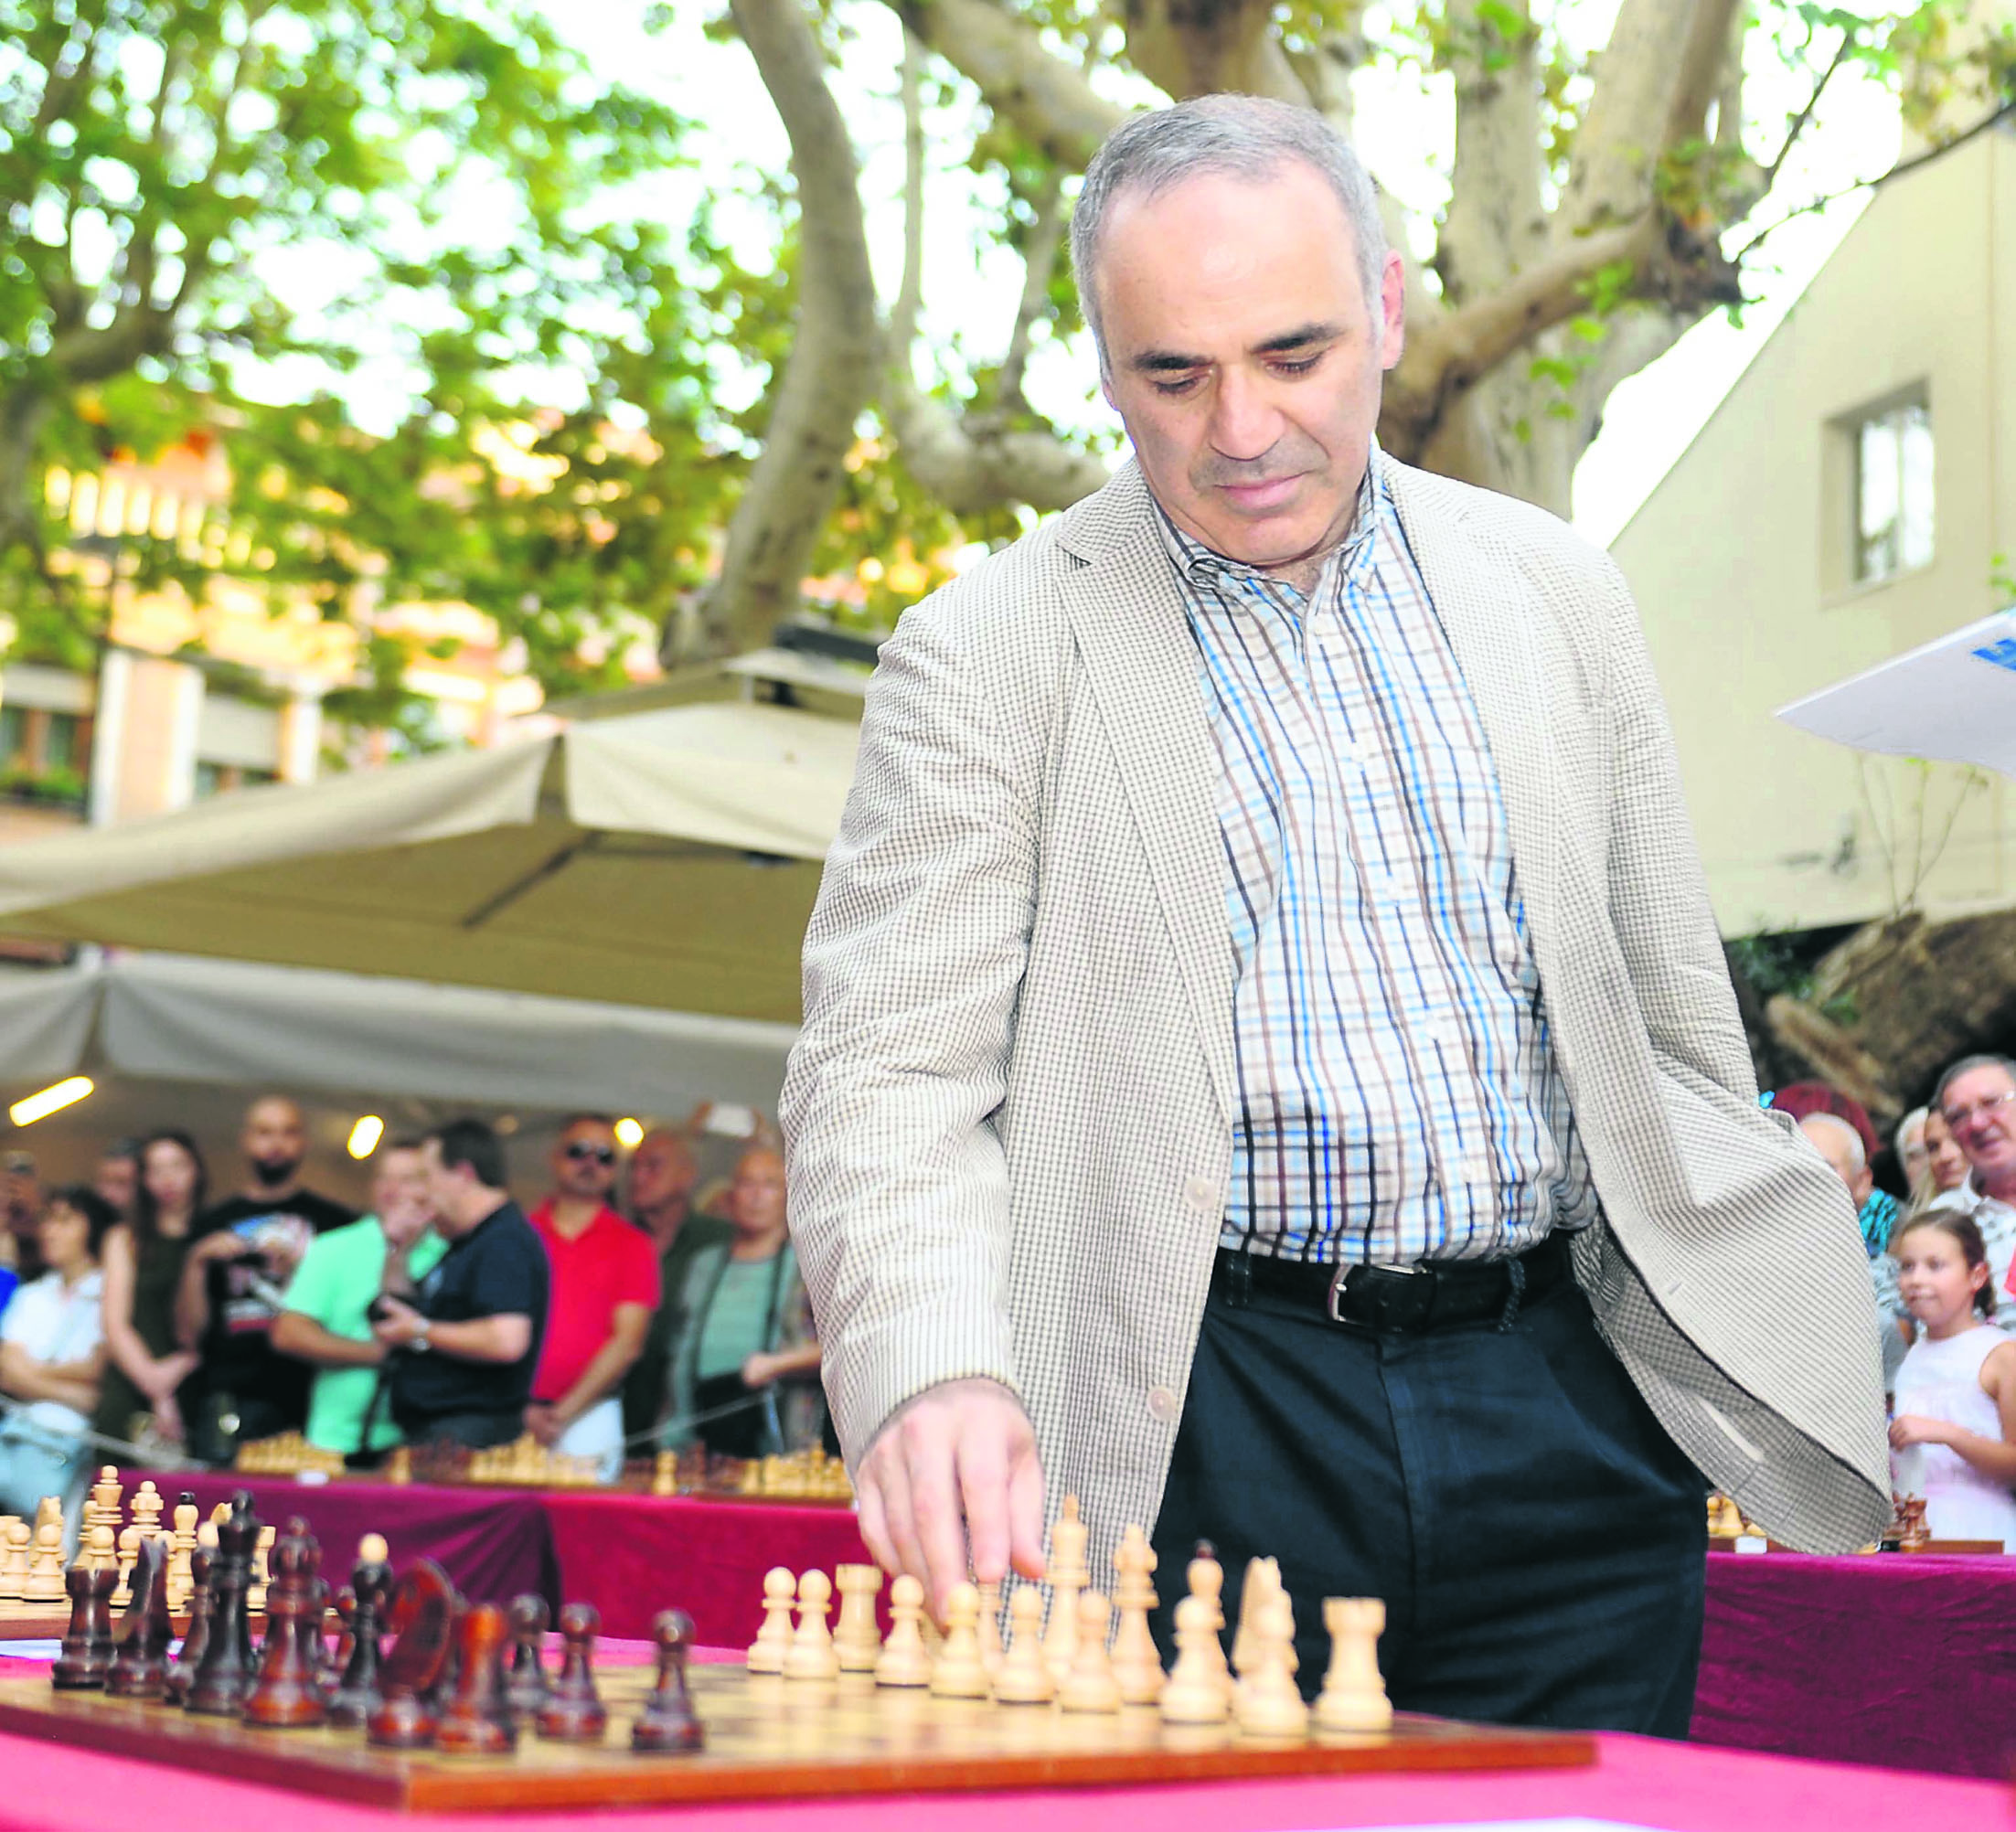 Kasparov puna dva i pol desetljeća svakog ljeta dolazi u Hrvatsku